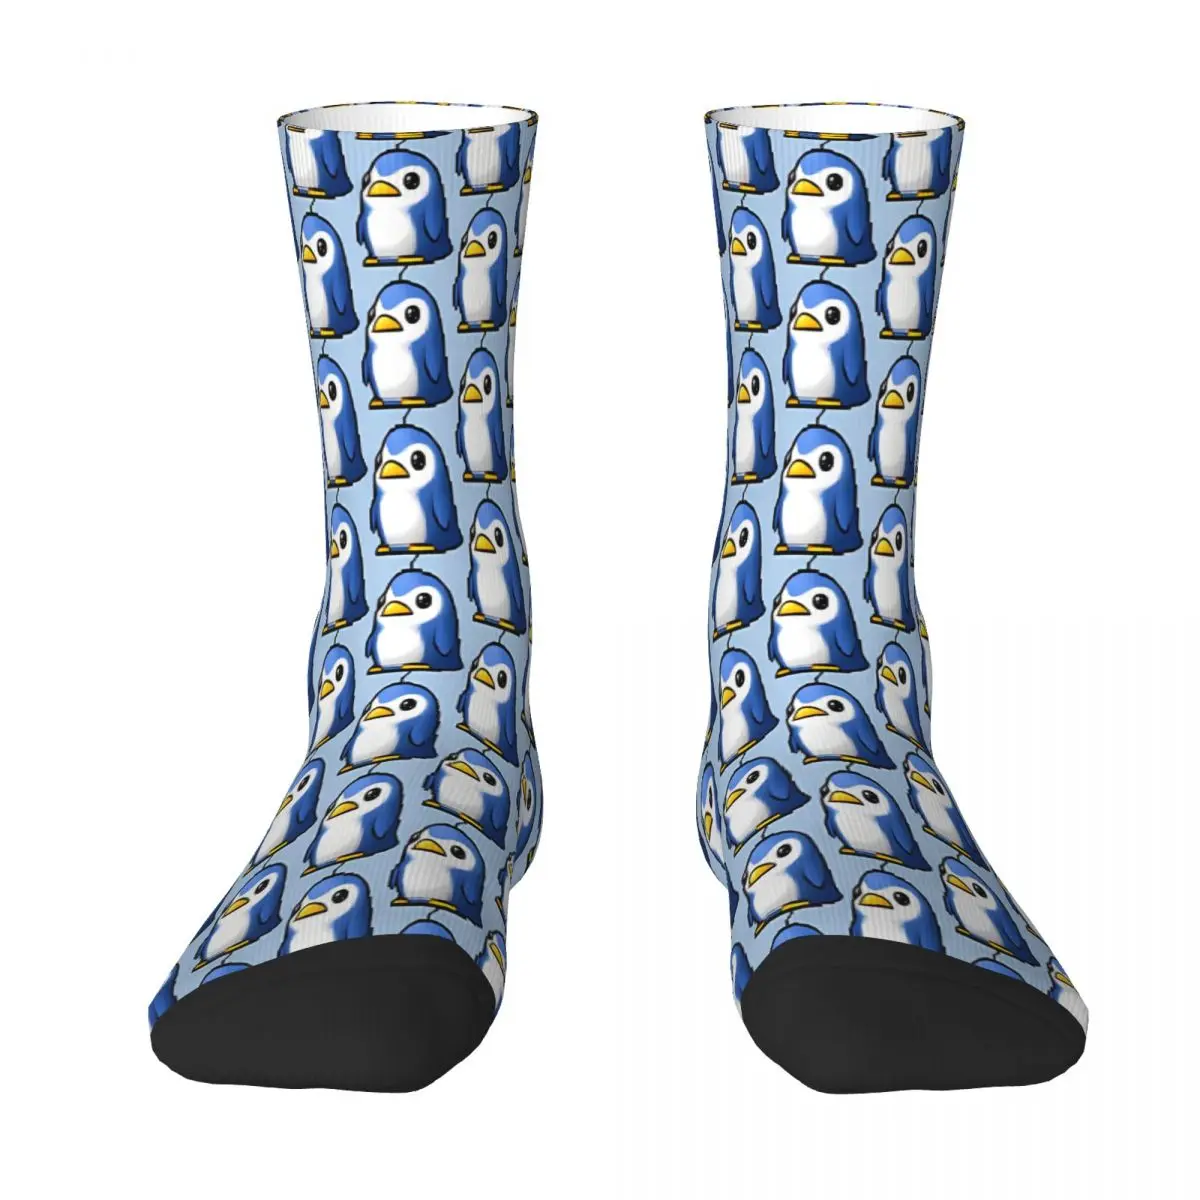 

Blue Penguin Pet MapleStory Maple Story Game Sock Socks Men Women Polyester Stockings Customizable Design